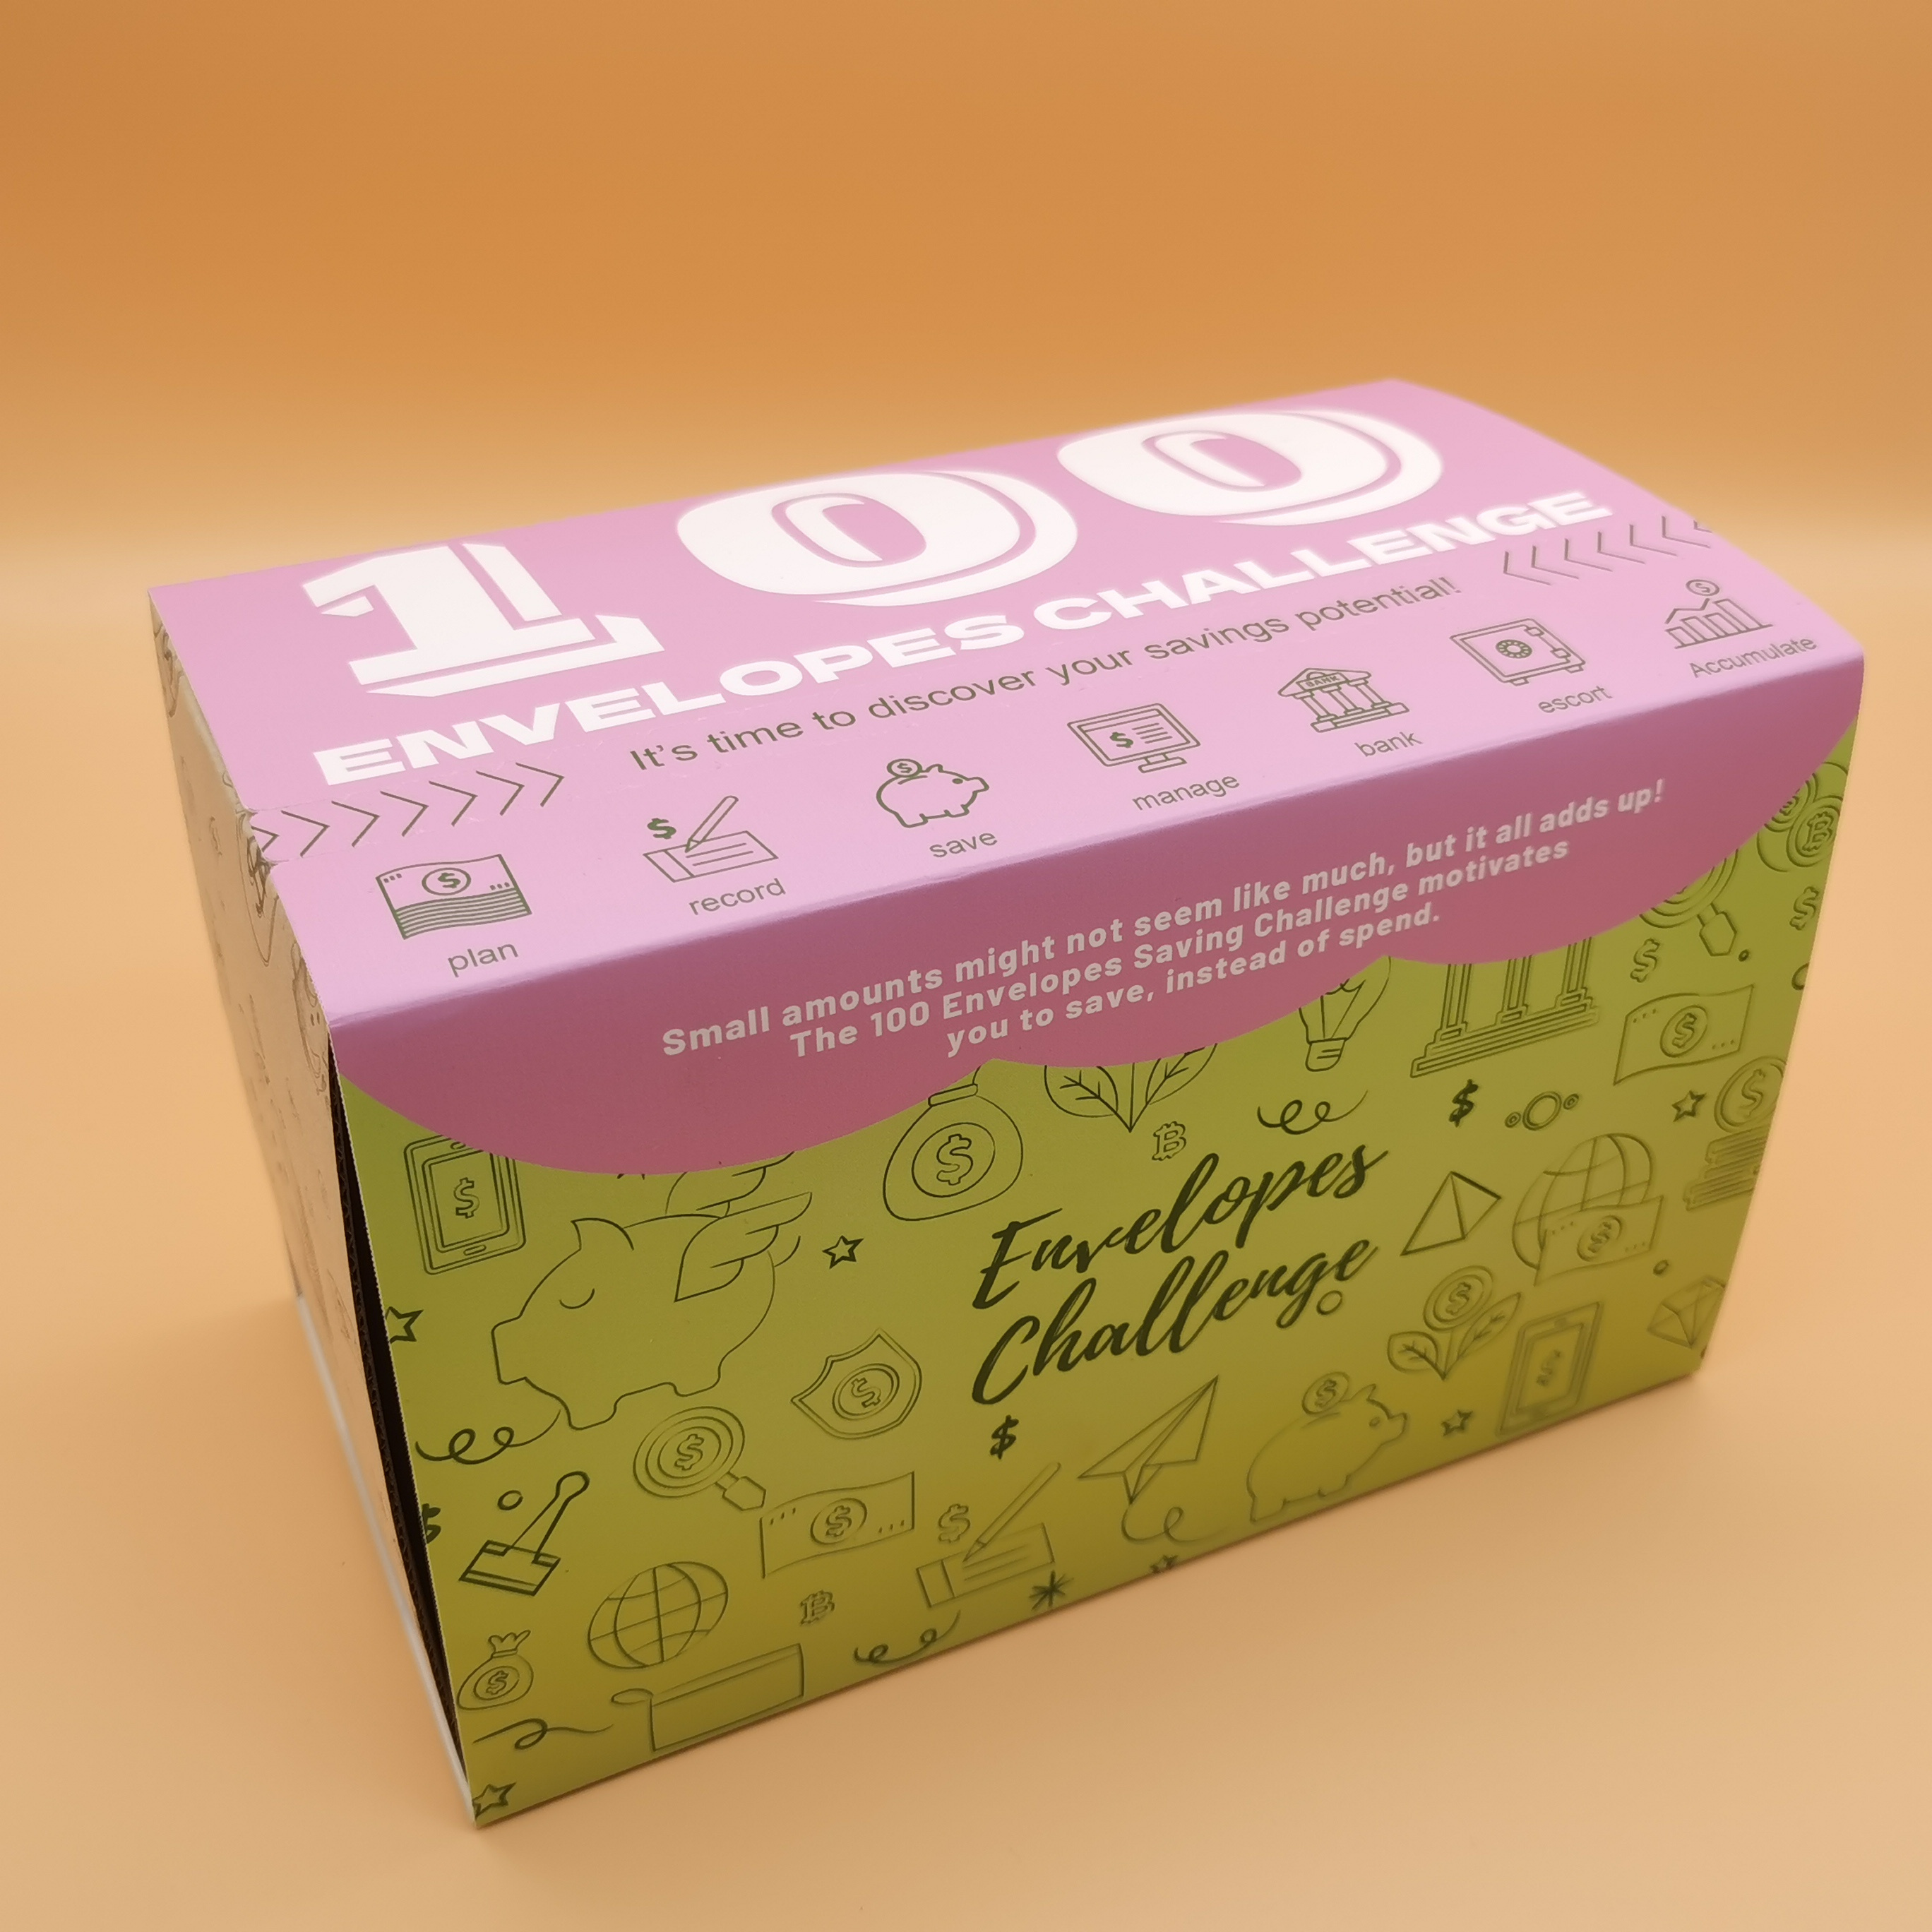  Kit de desafío de ahorro de dinero de 100 sobres, 100 sobres, 9  colores, 1 caja de almacenamiento, 1 planificador, 1 etiqueta, sobres de  papel, ahorro de desafío, ahorra 5050 dólares